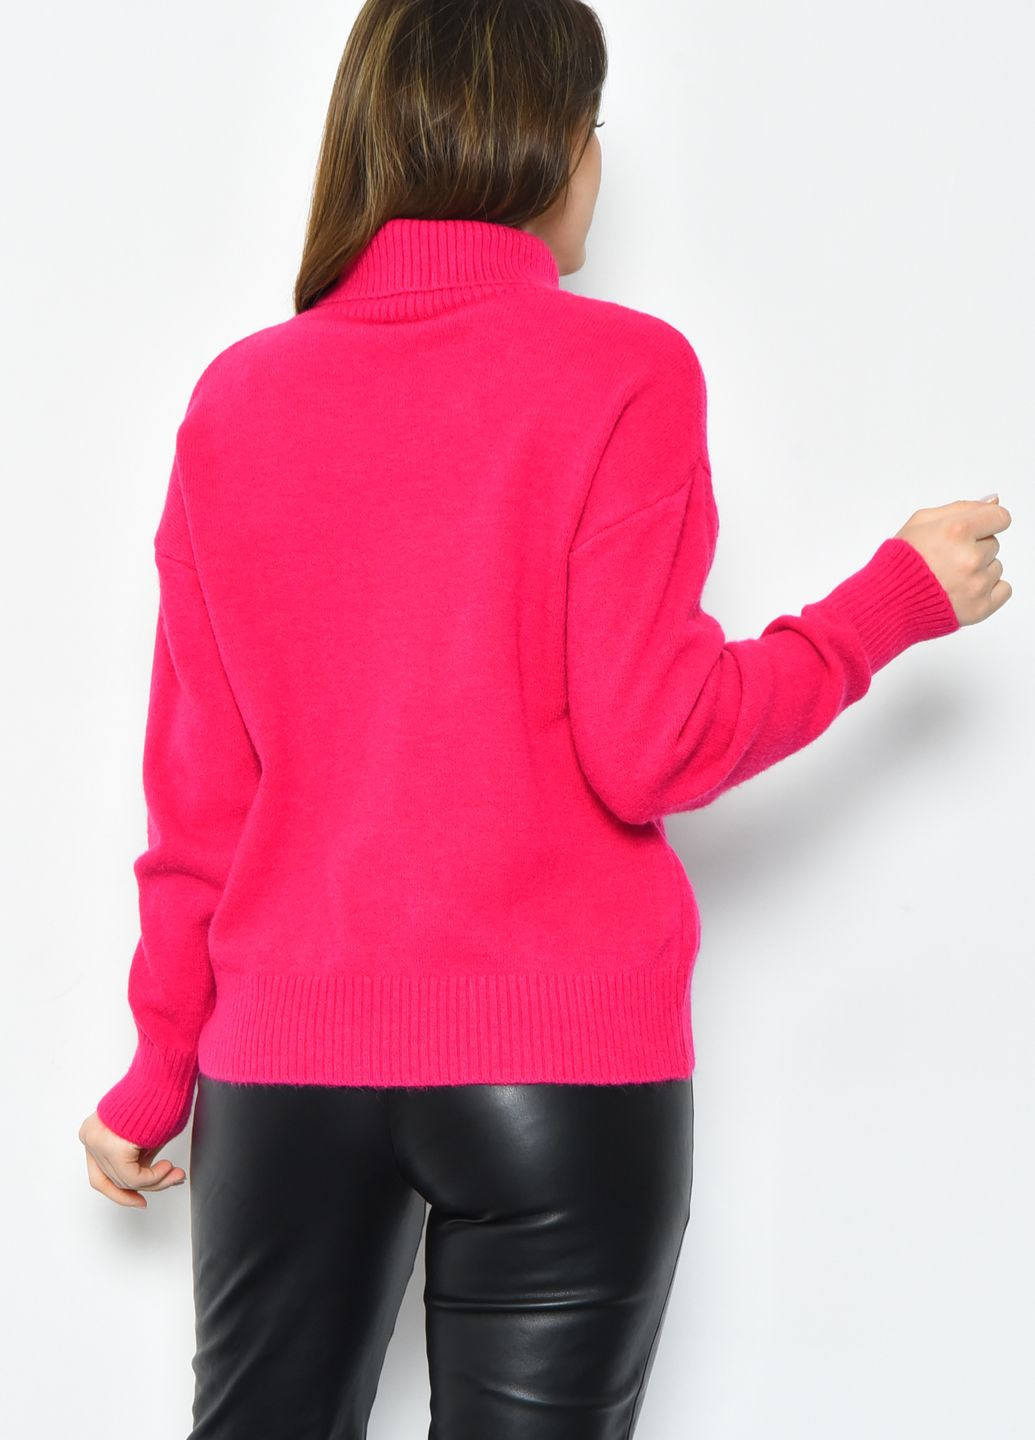 Малиновый зимний свитер женский акриловый малинового цвета пуловер Let's Shop